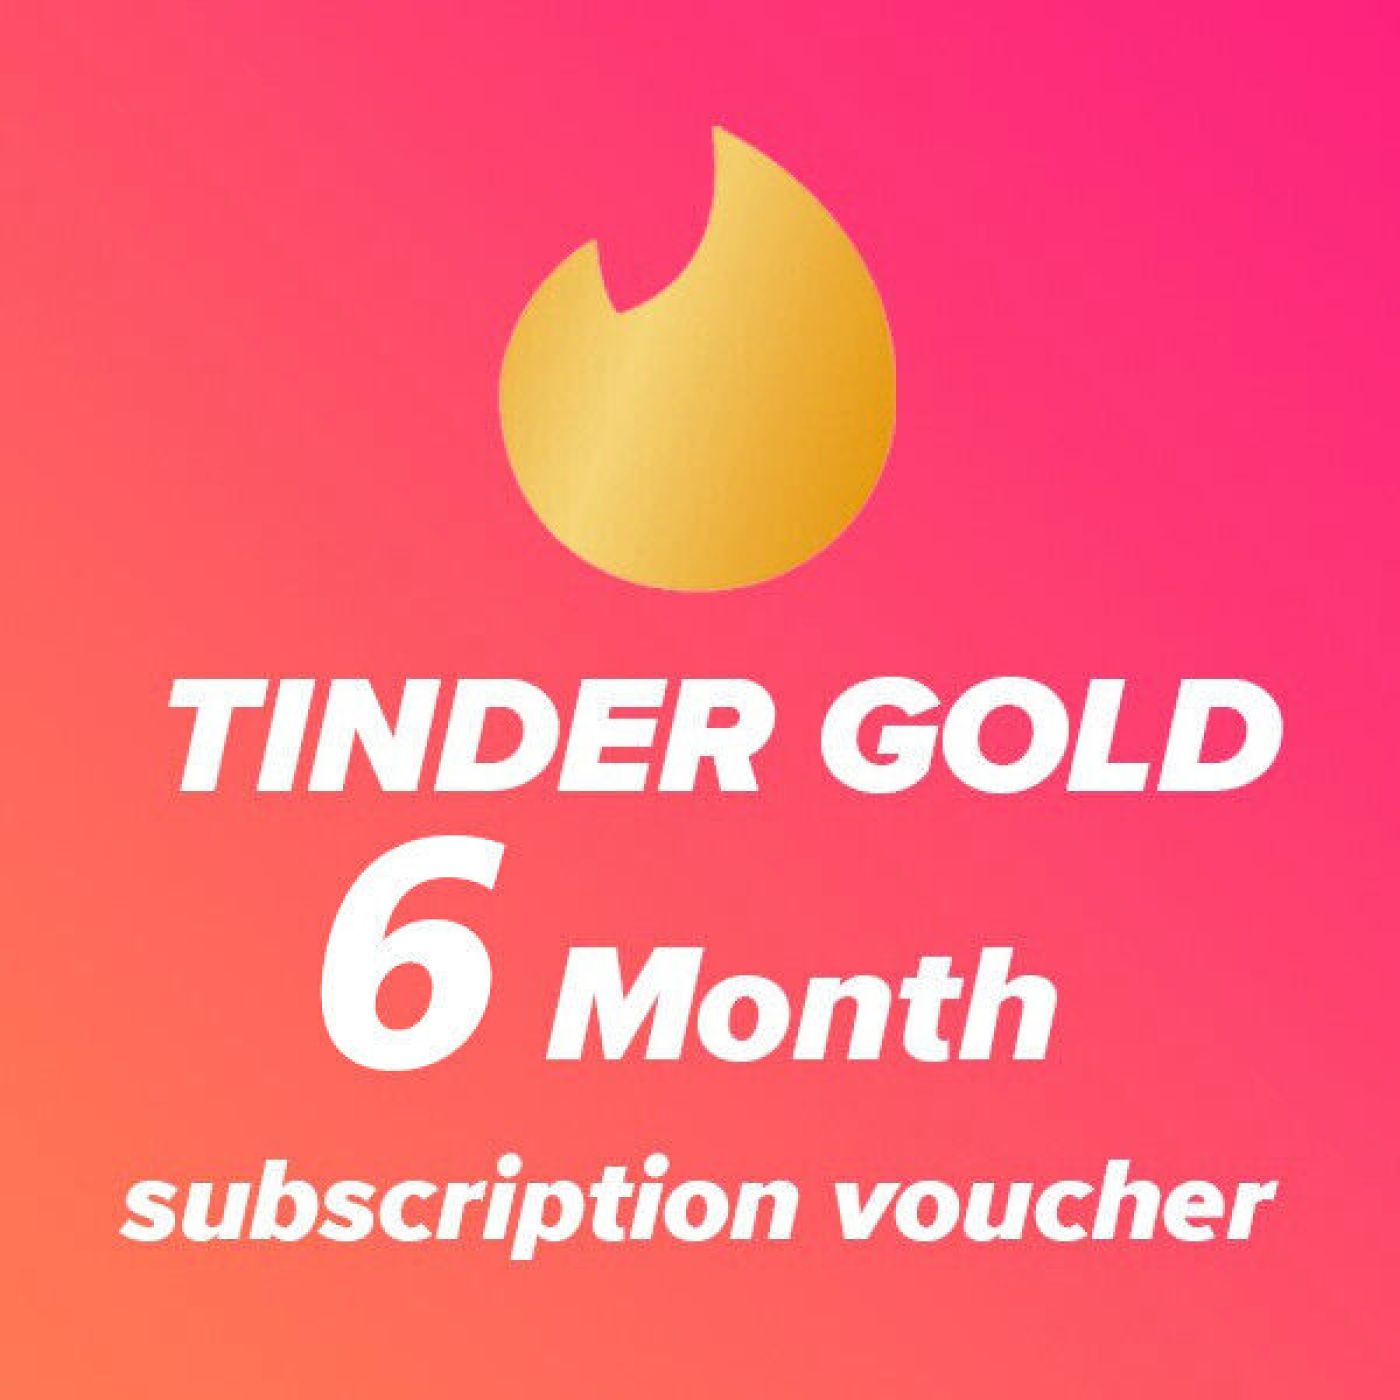 Mua Tinder Gold giá rẻ nâng cấp chính chủ (6 tháng)